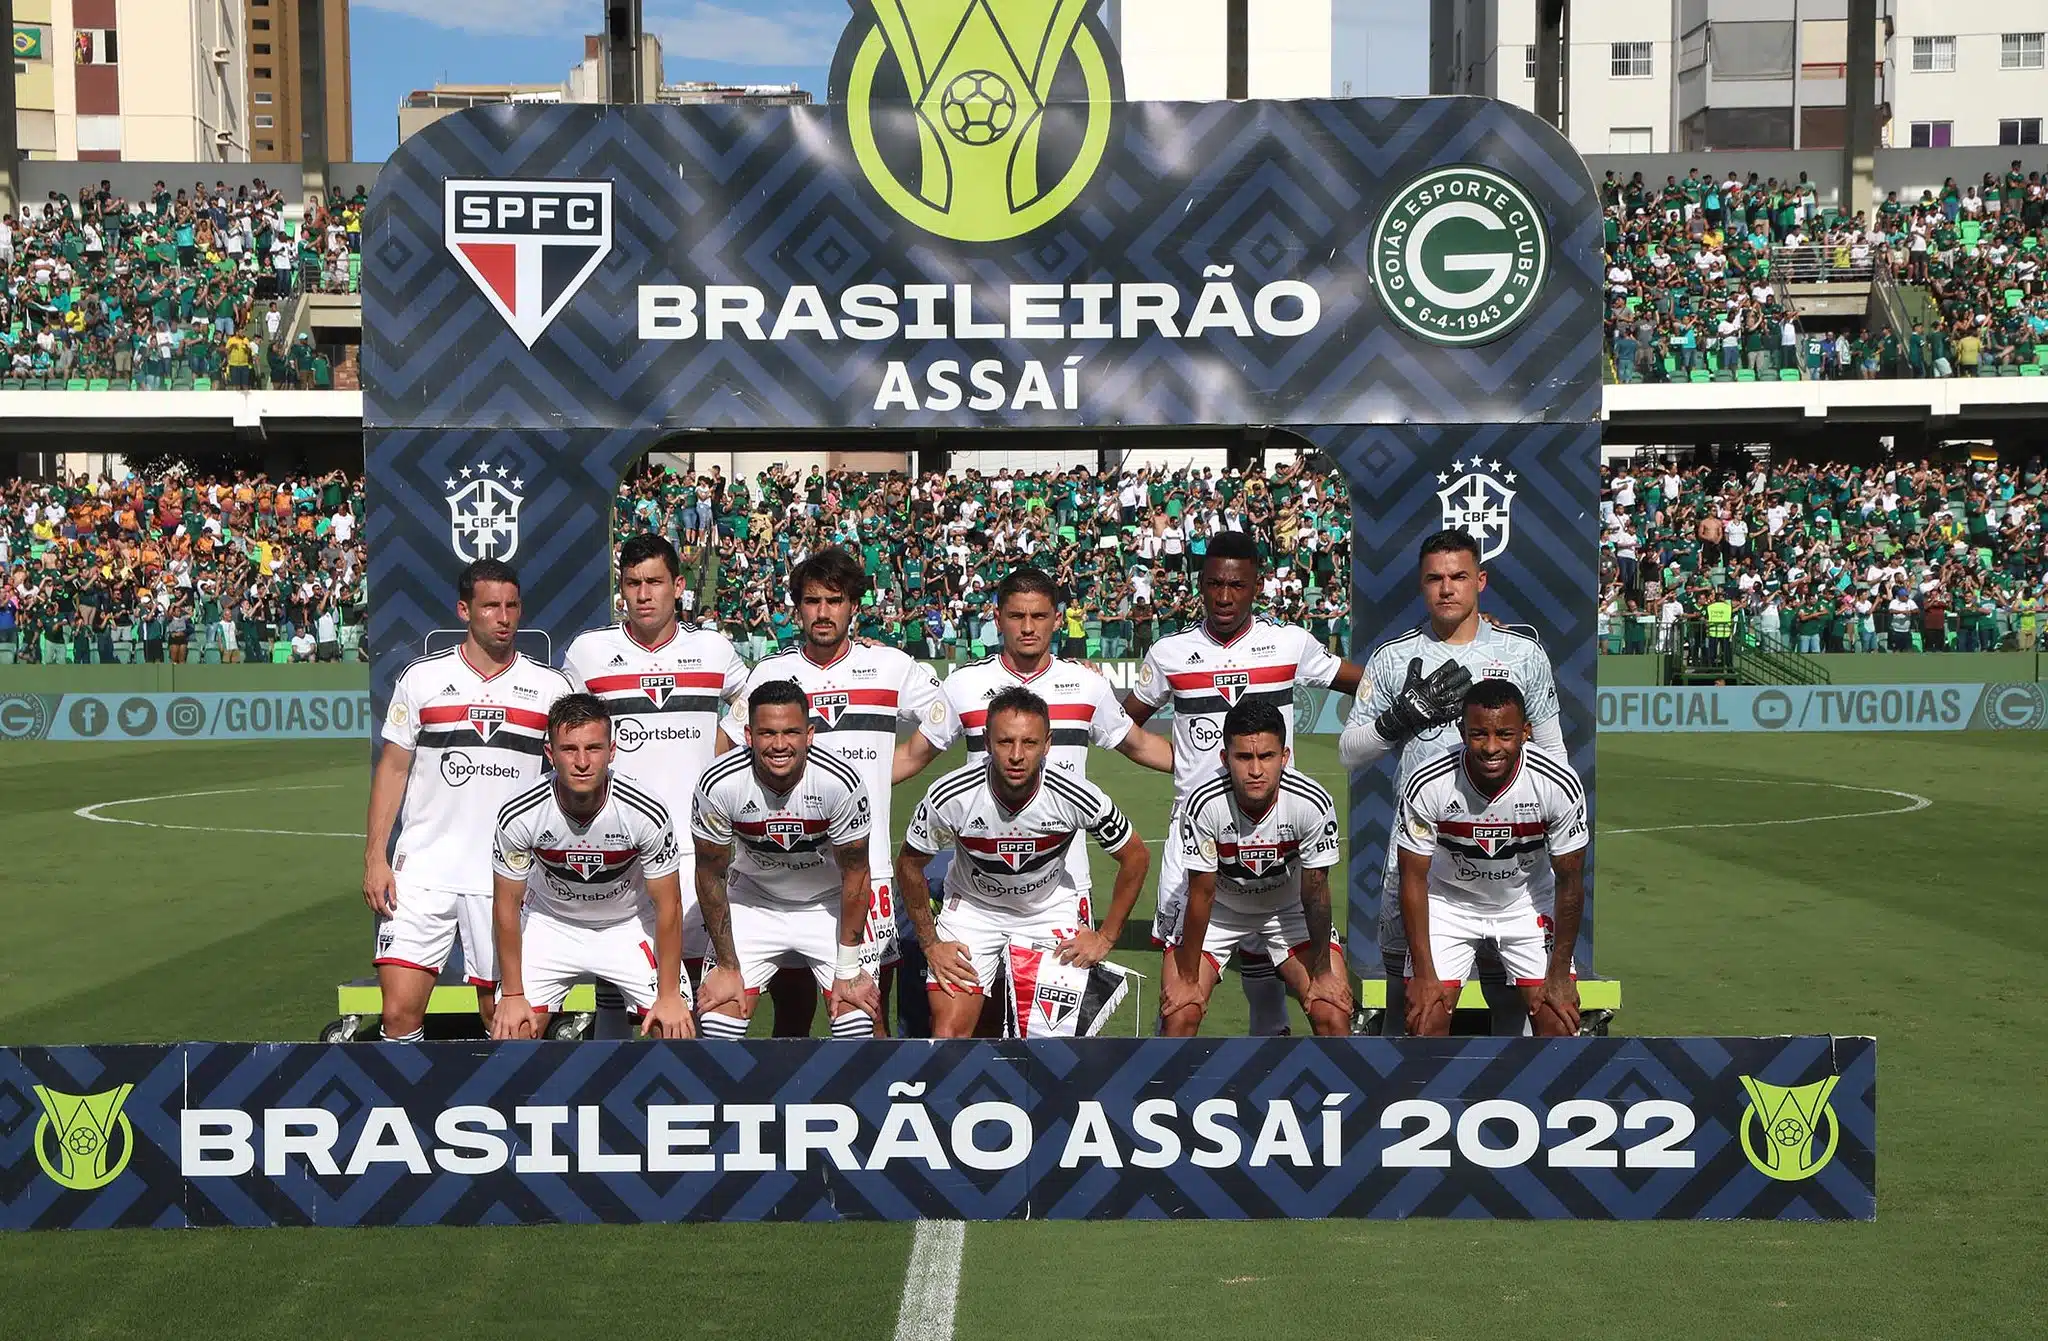 Confira como ficou a tabela final do Brasileirão 2022